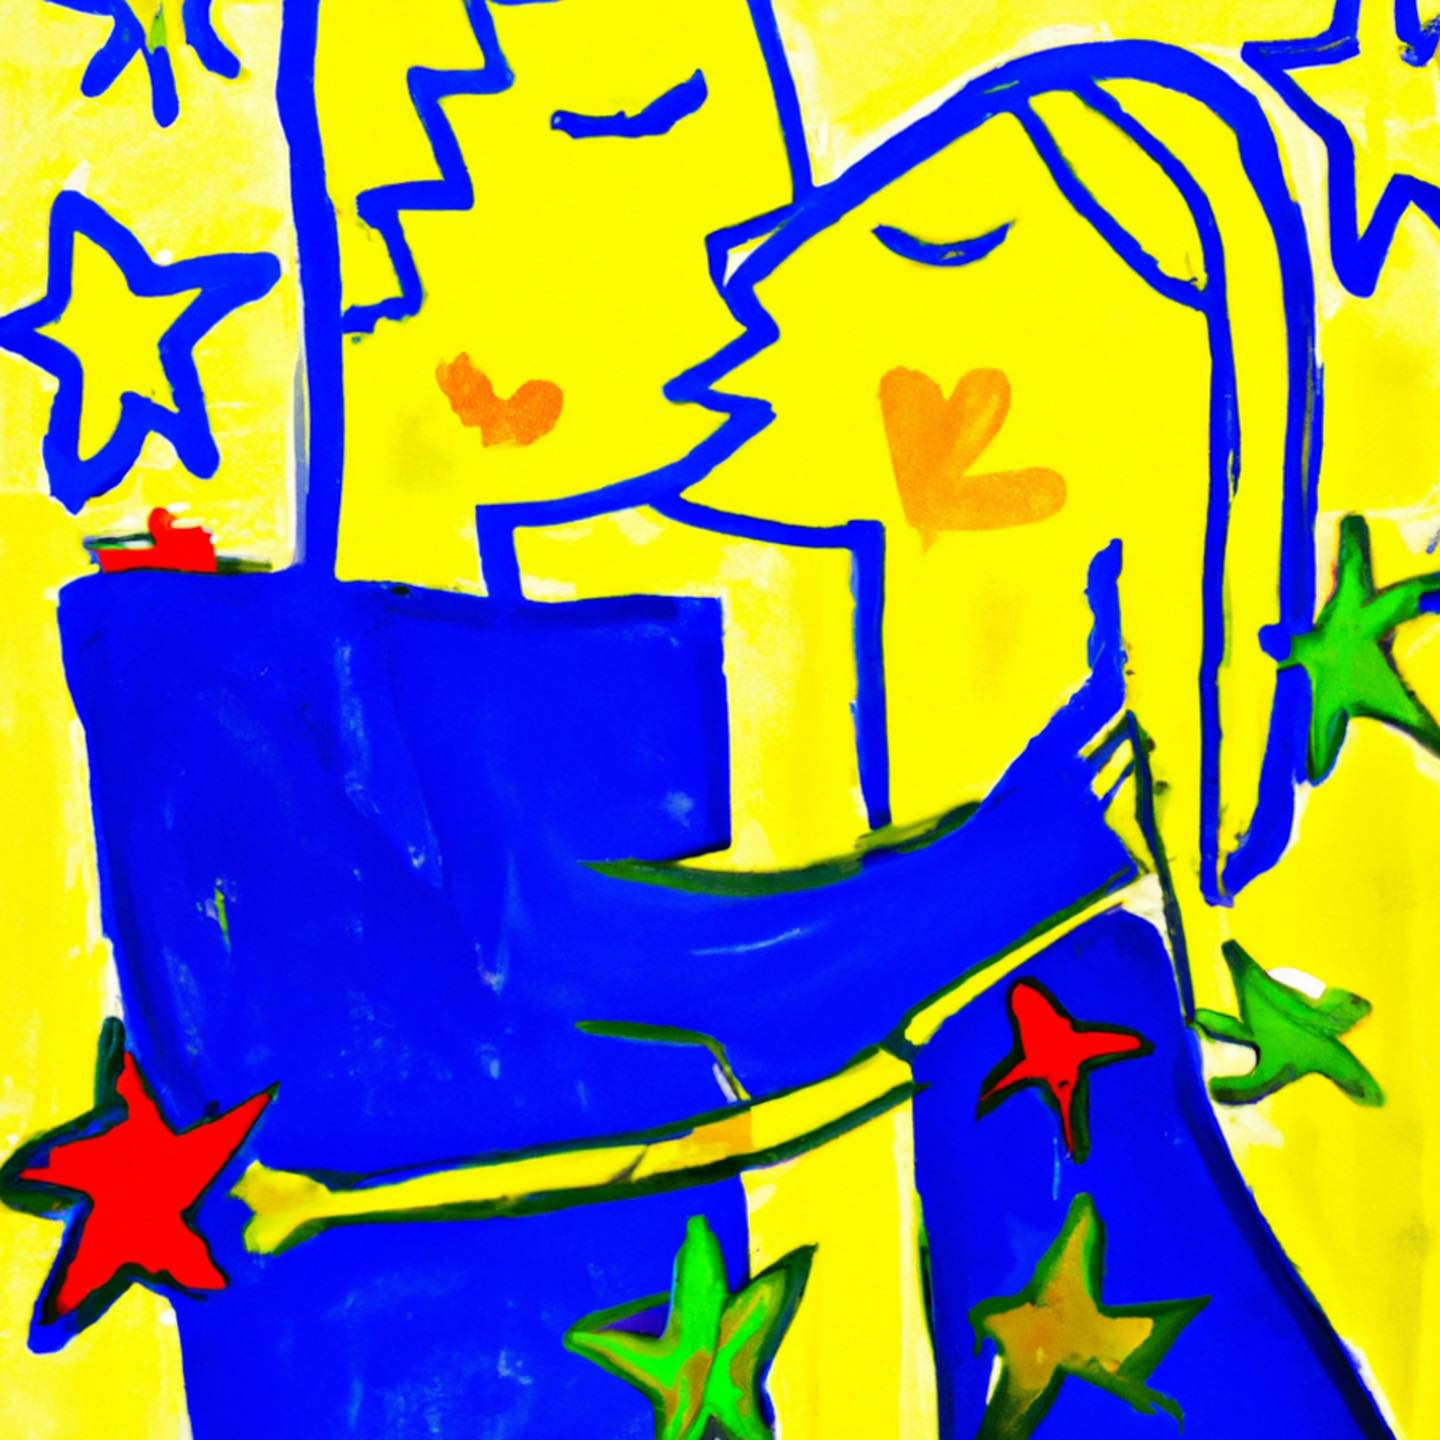 Обложка композиции «Зорі». 